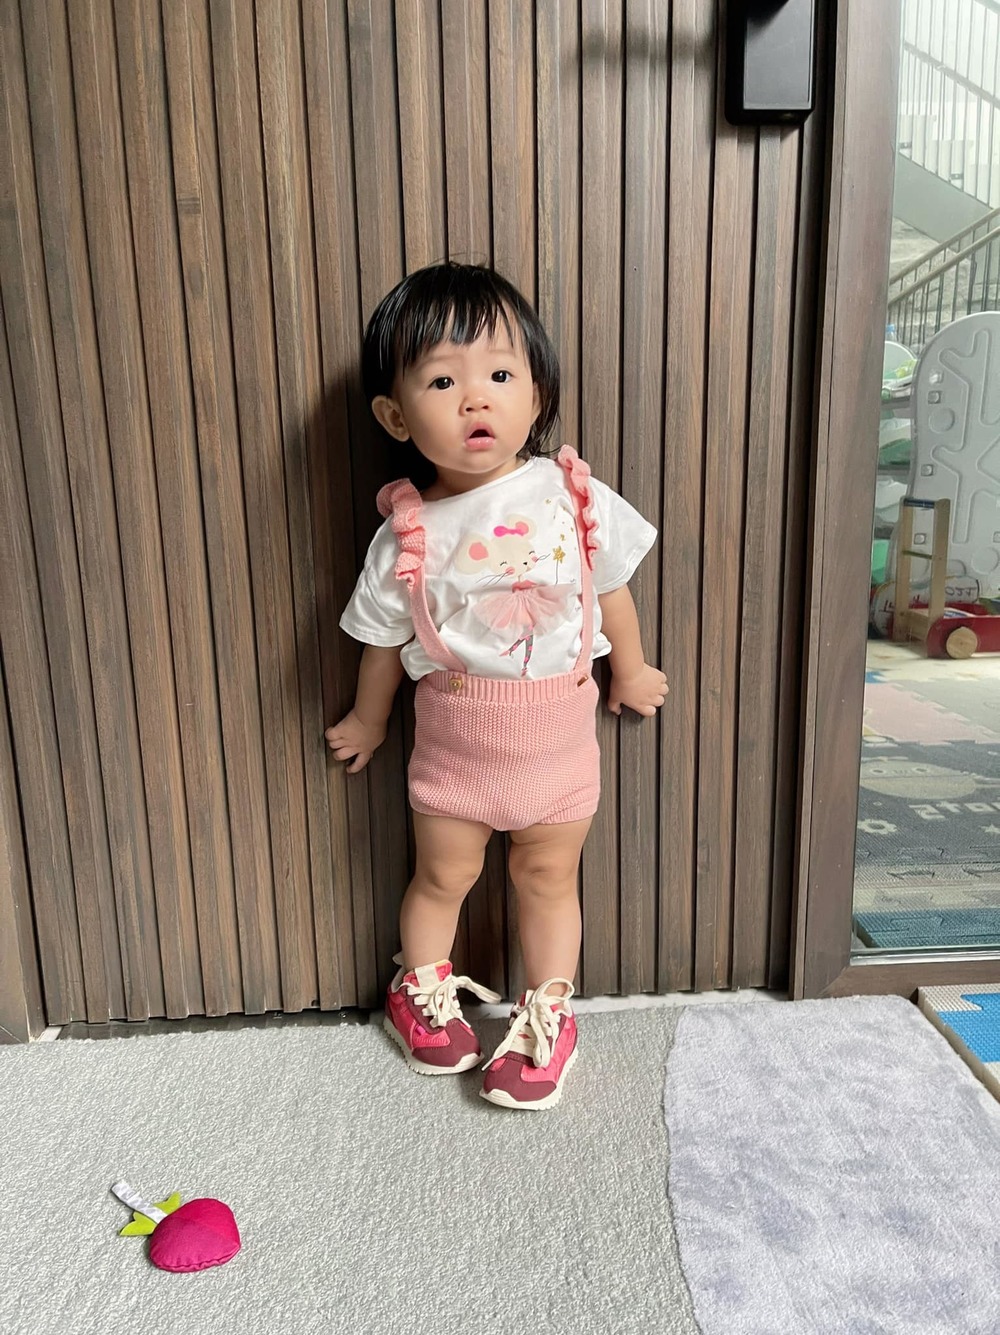 Bên cạnh váy xoè dễ thương, Cường Đô La và Đàm Thu Trang cũng tích cực sắm cho con gái những bộ trang phục thoải mái năng động hơn như quần yếm len và áo phông trắng. Bên cạnh đó, đôi sneaker màu hồng cũng là item rất bắt mắt.